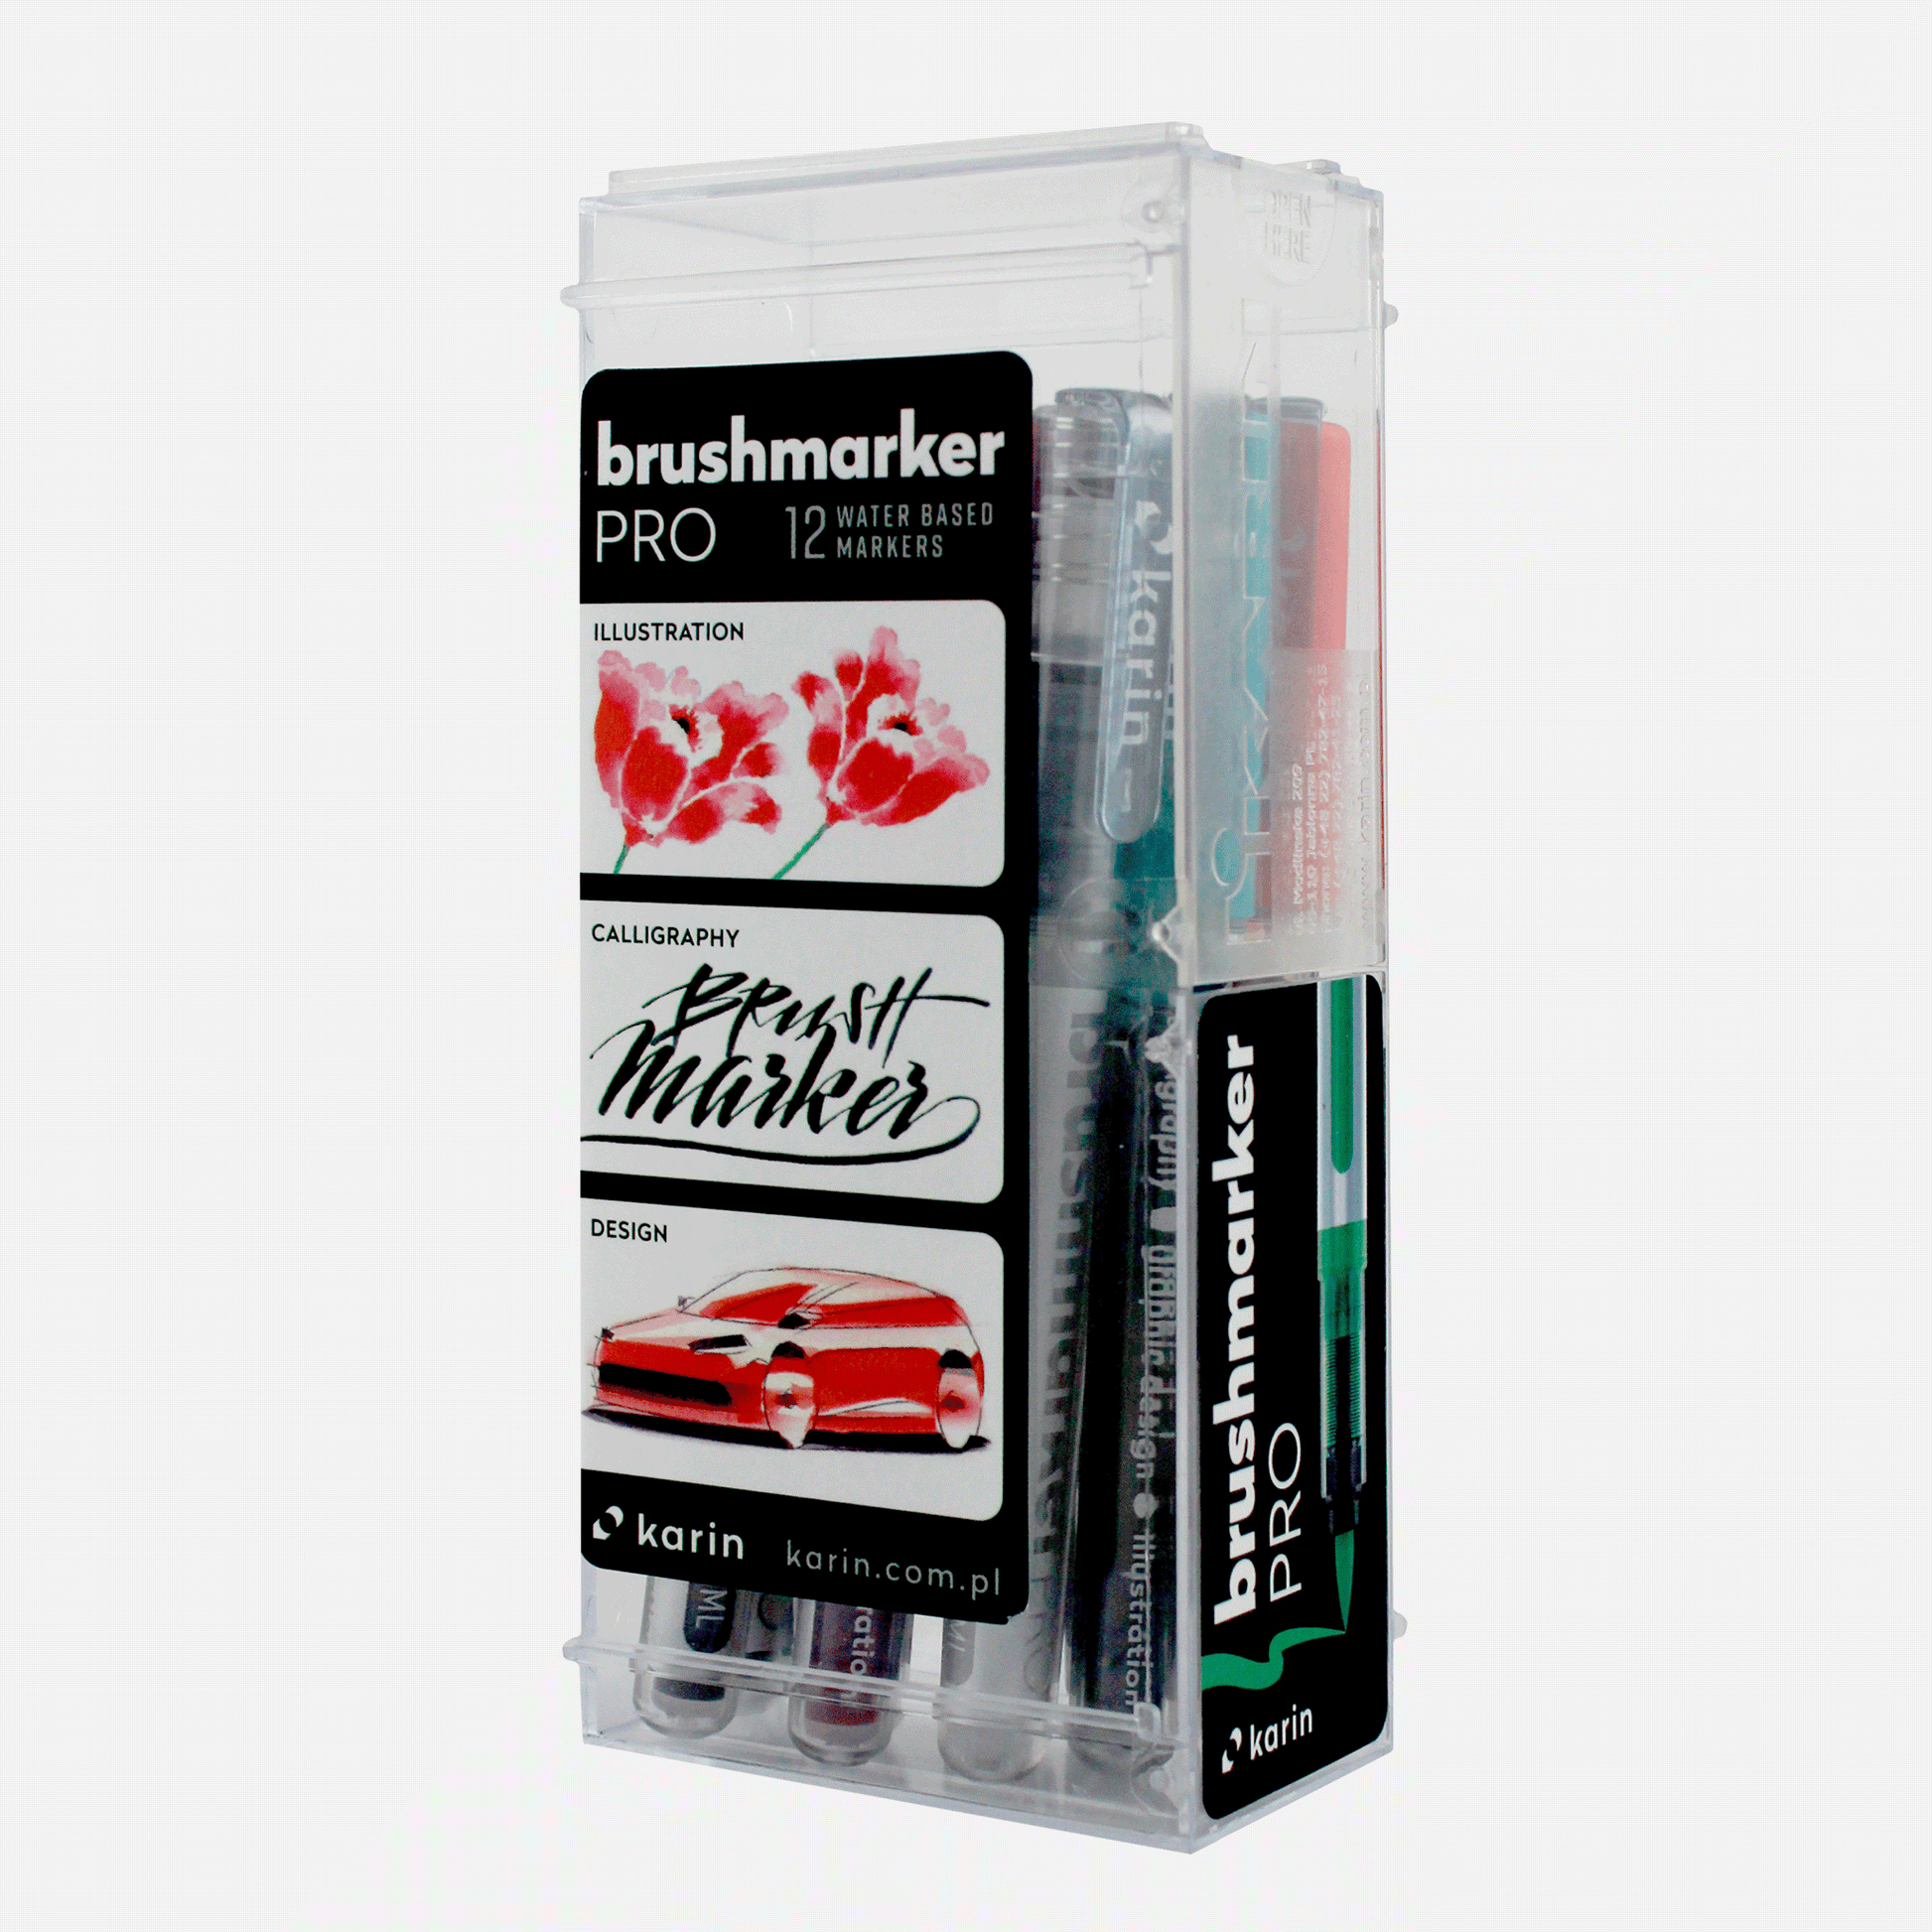 Karin brushmarker PRO - water soluble brush marker 